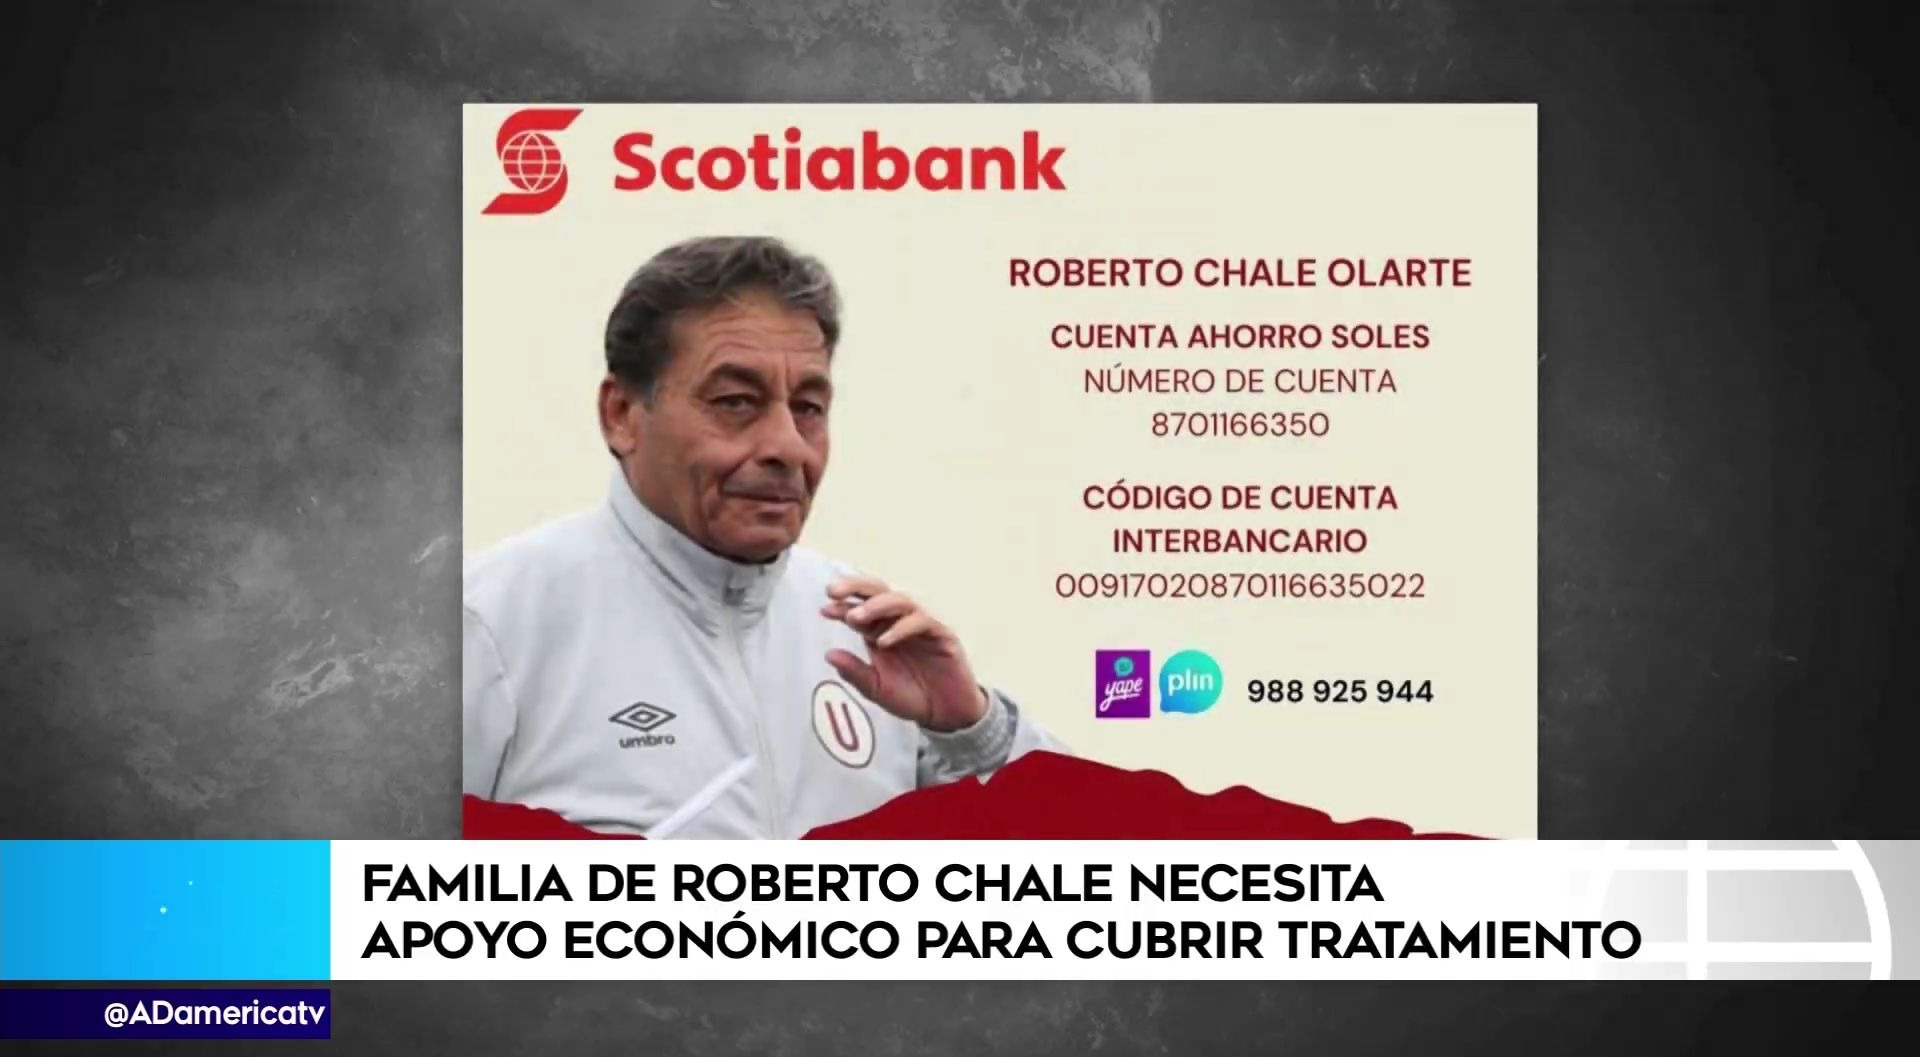 Cuentas Banco Scotiabank para apoyar a Roberto Chale. | Foto: AD.